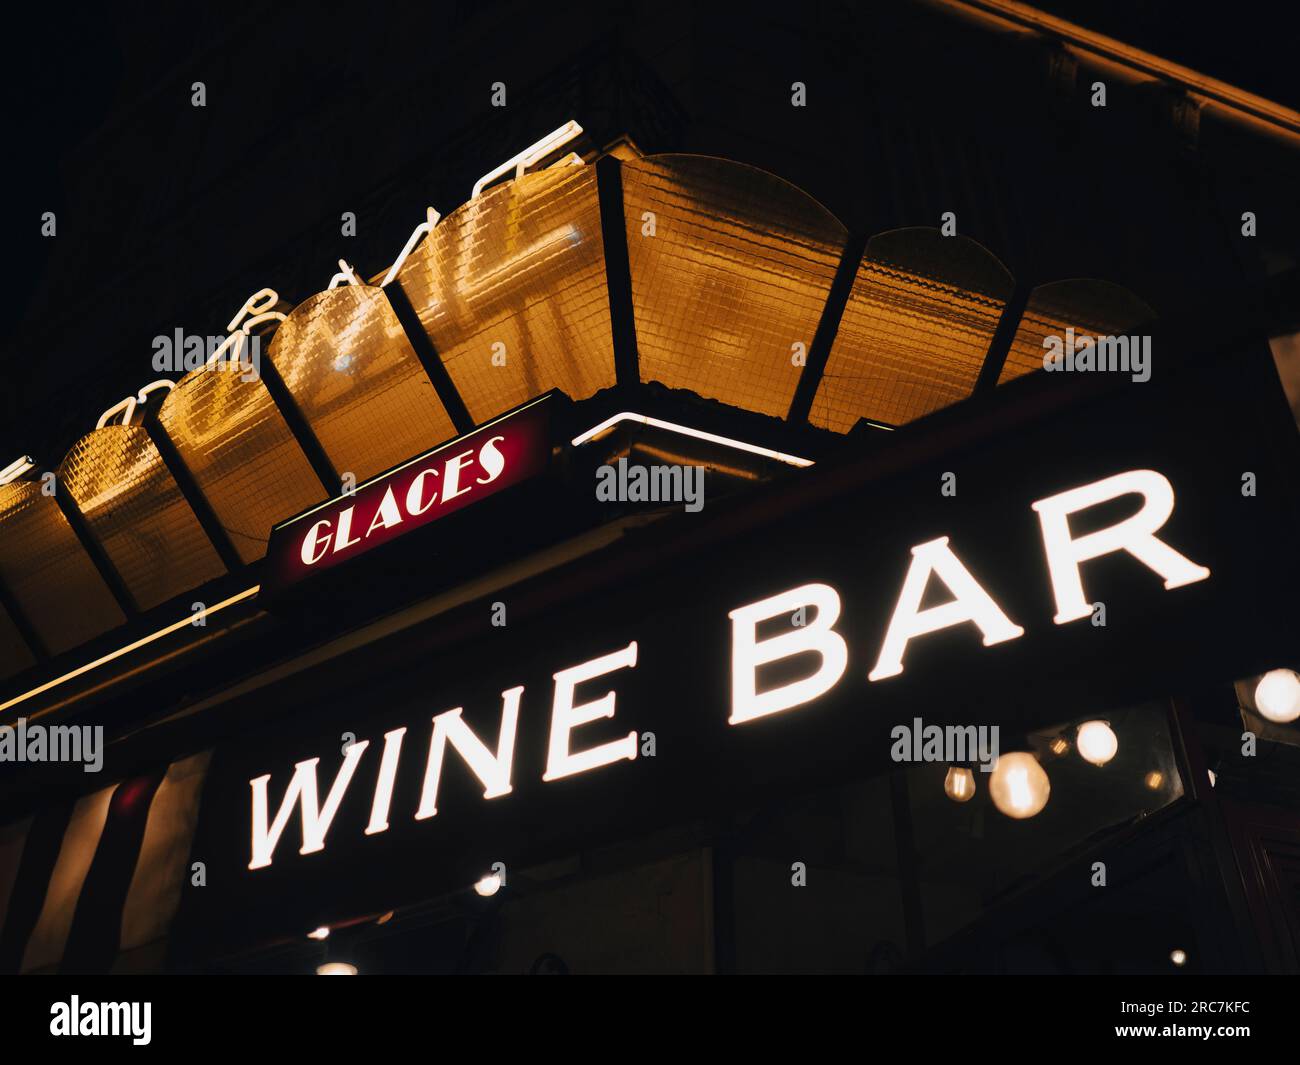 Wine Bar, Café Le dôme ramasse miette, Paris, France, Europe, EU. Stock Photo